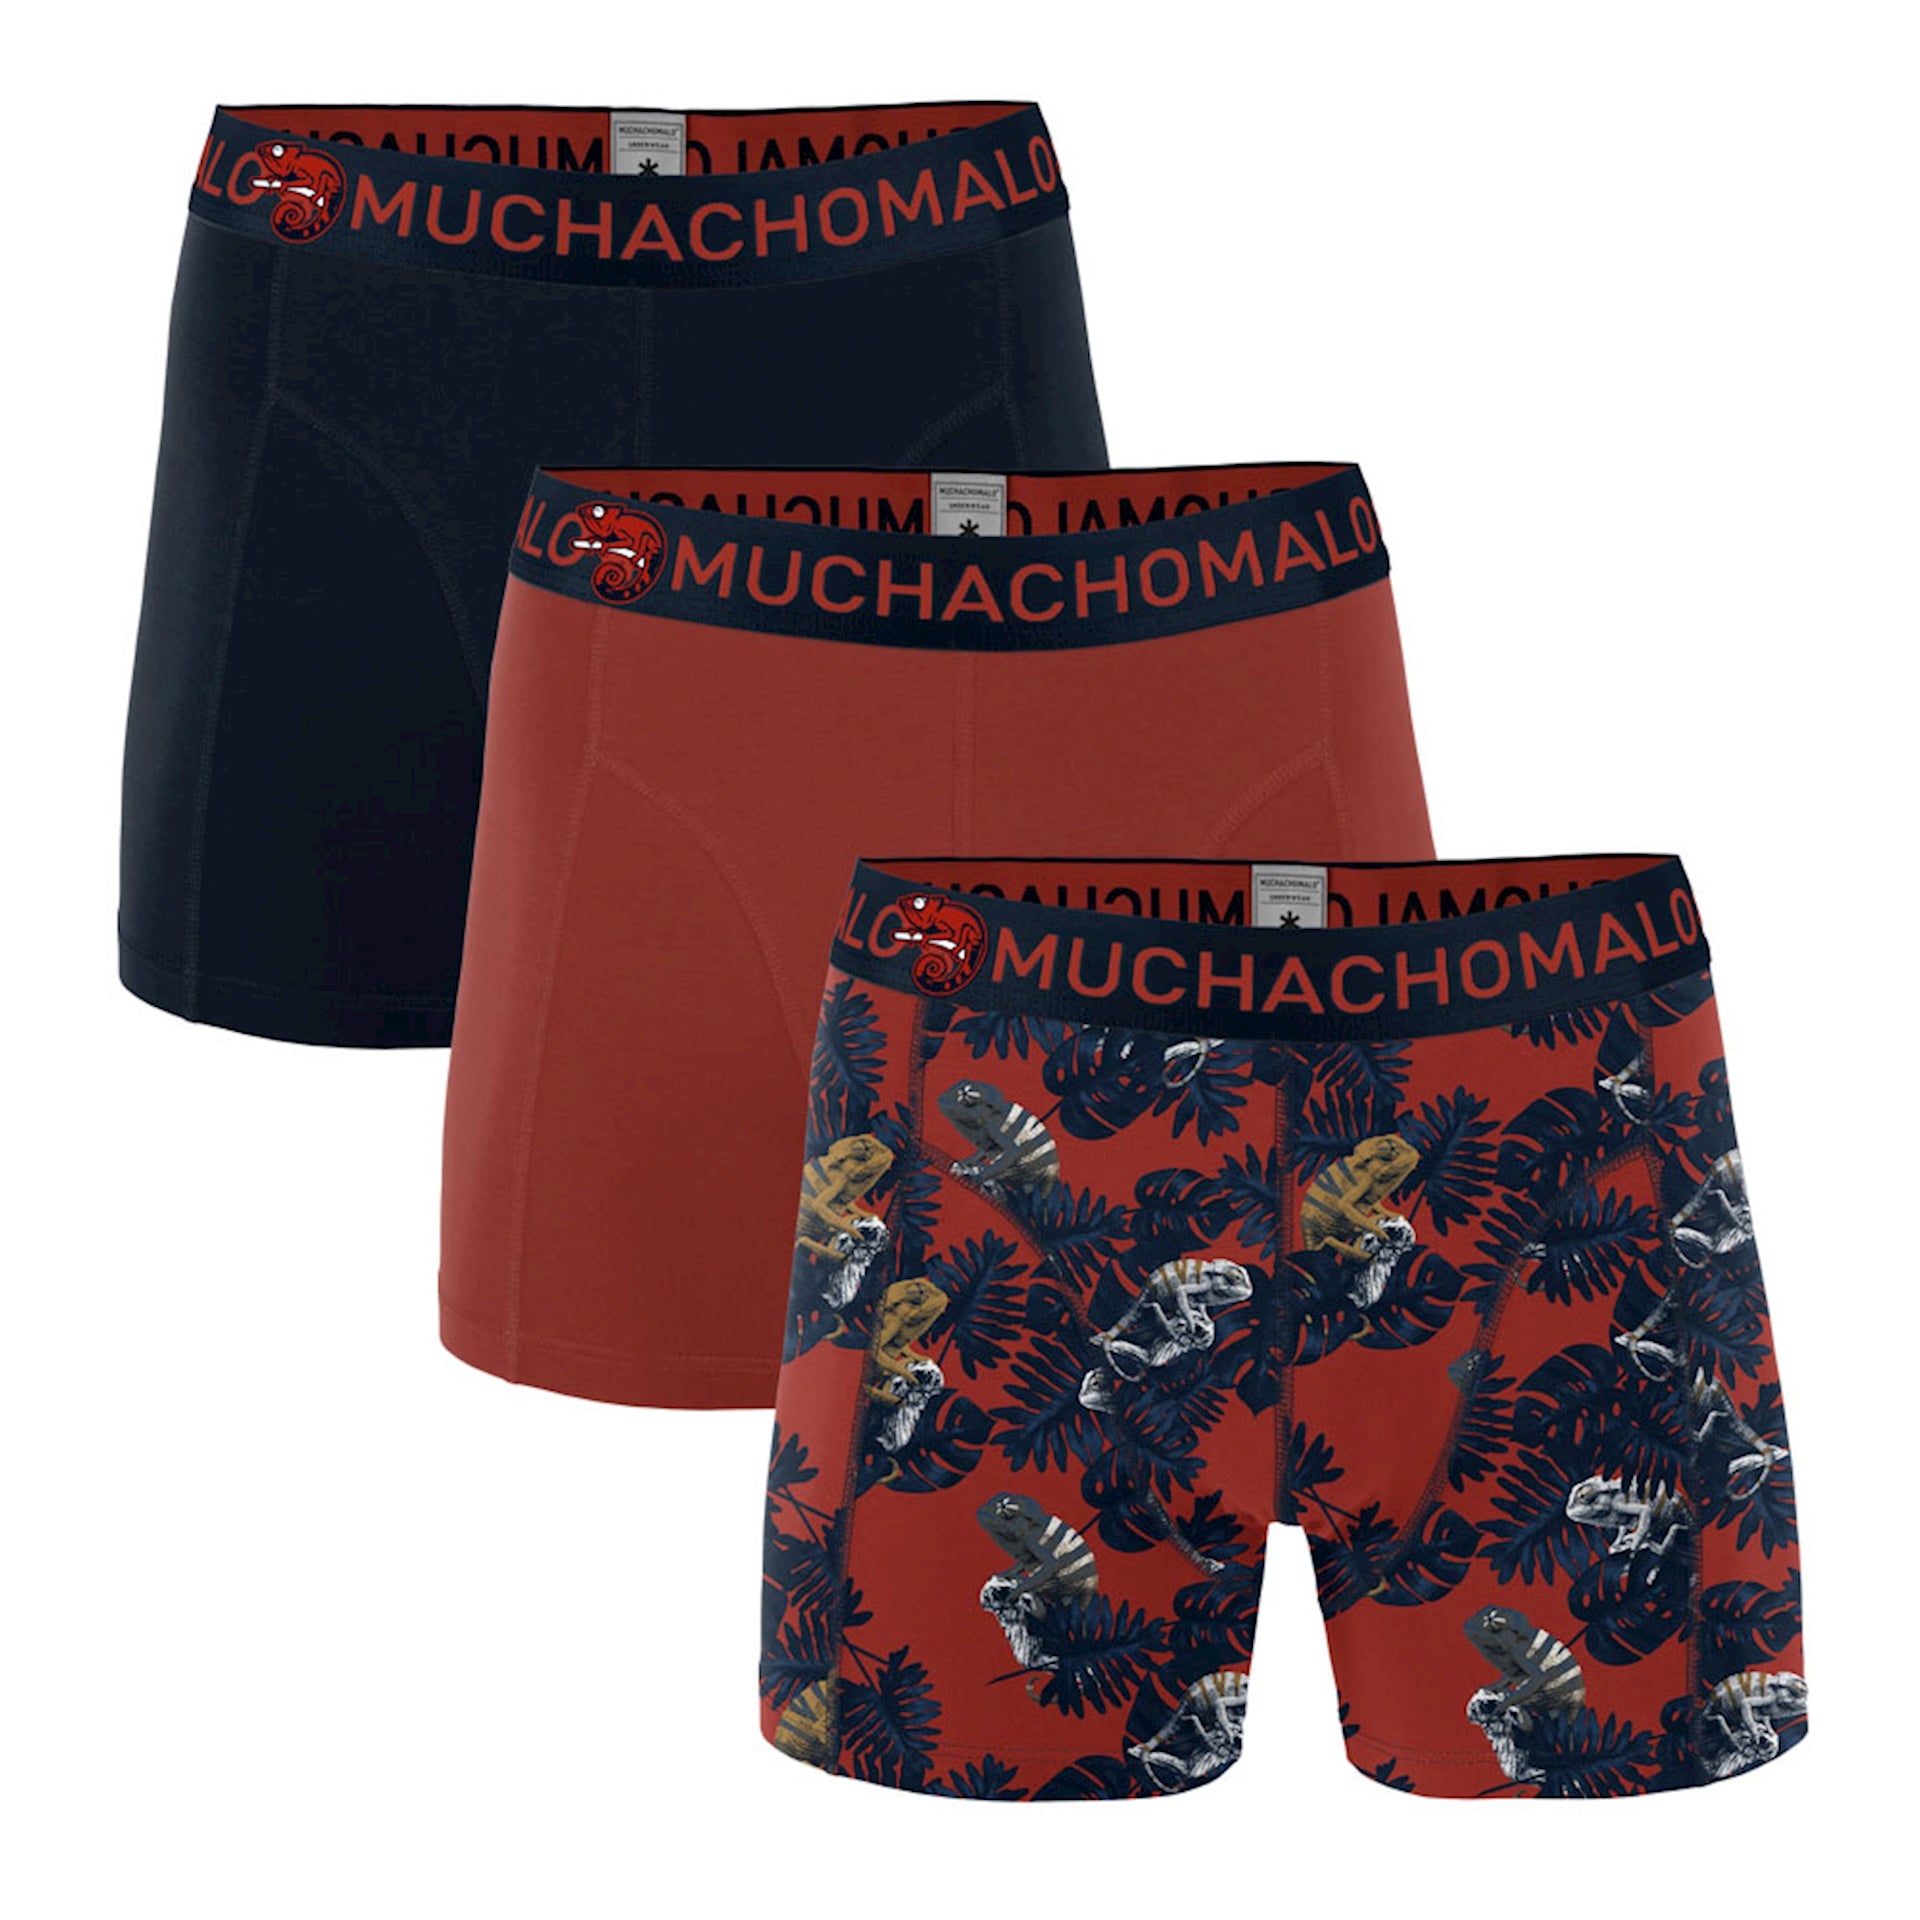 Muchachomalo 3-pack Underwear Chame